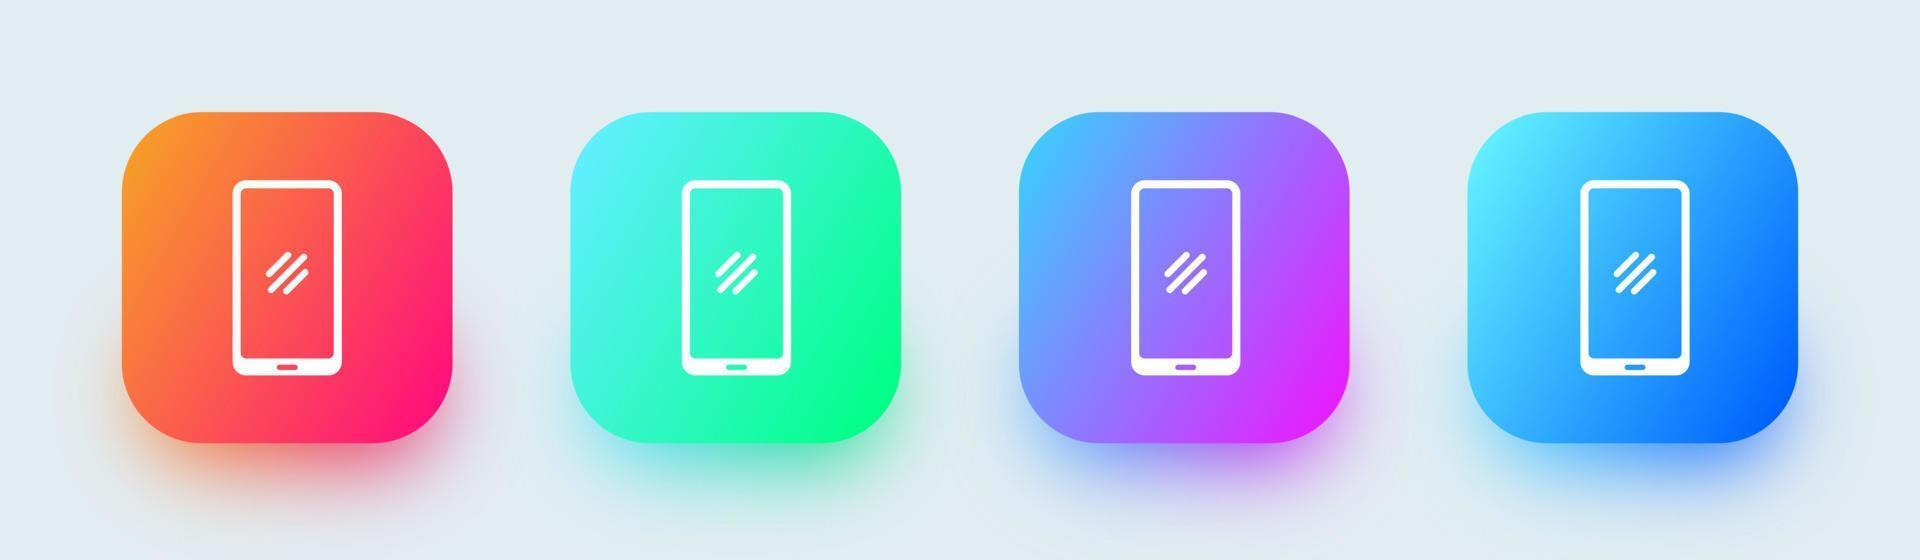 icône de smartphone ou de téléphone portable dans des couleurs dégradées carrées. illustration vectorielle de téléphone portable. vecteur